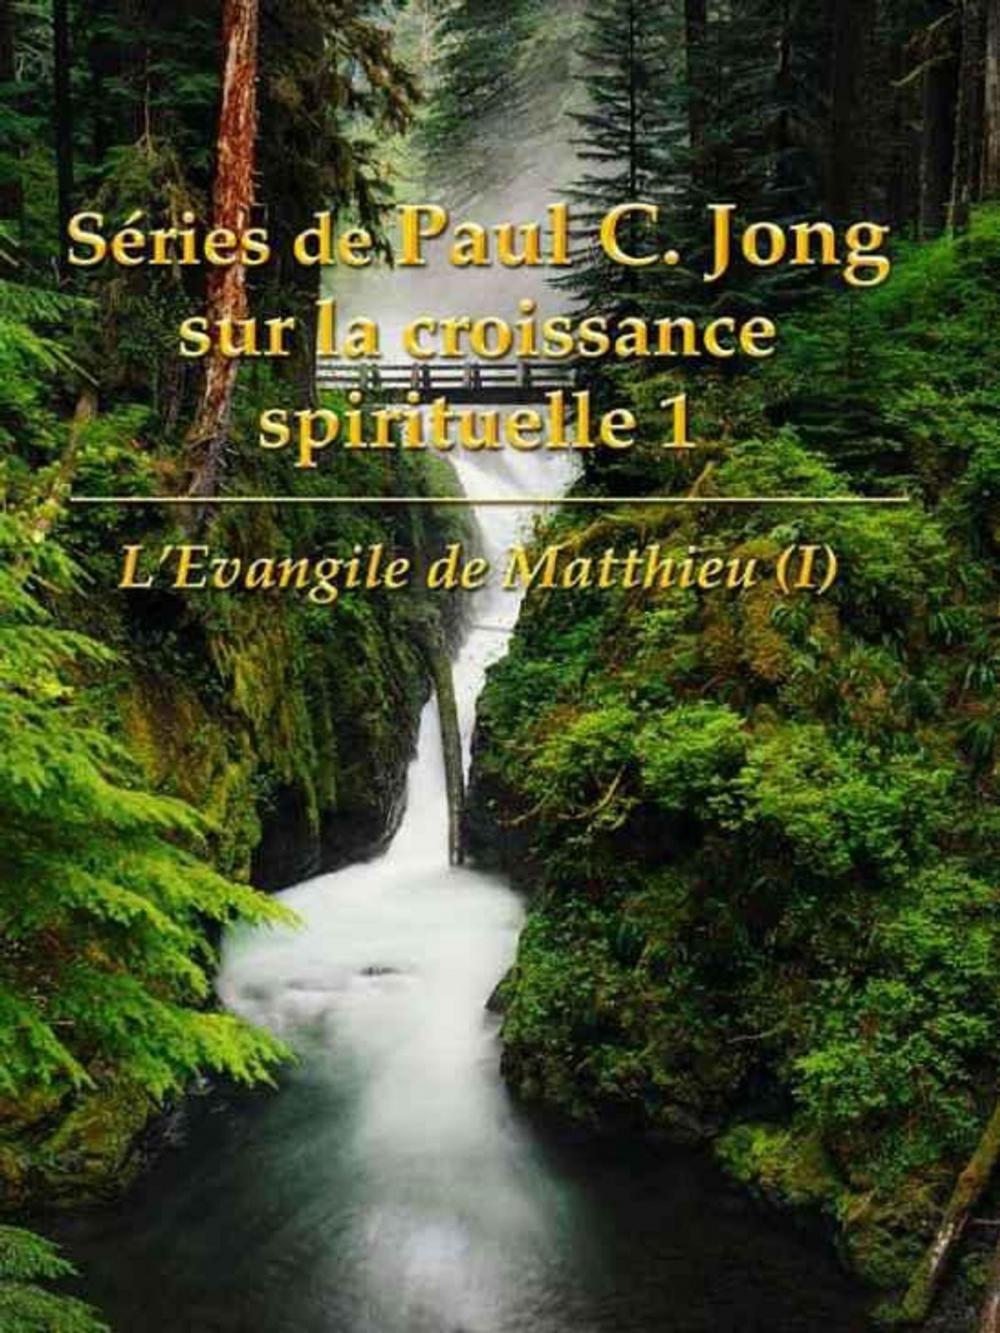 Big bigCover of L'Evangile de Matthieu (I) - Séries de Paul C. Jong sur la croissance spirituelle 1